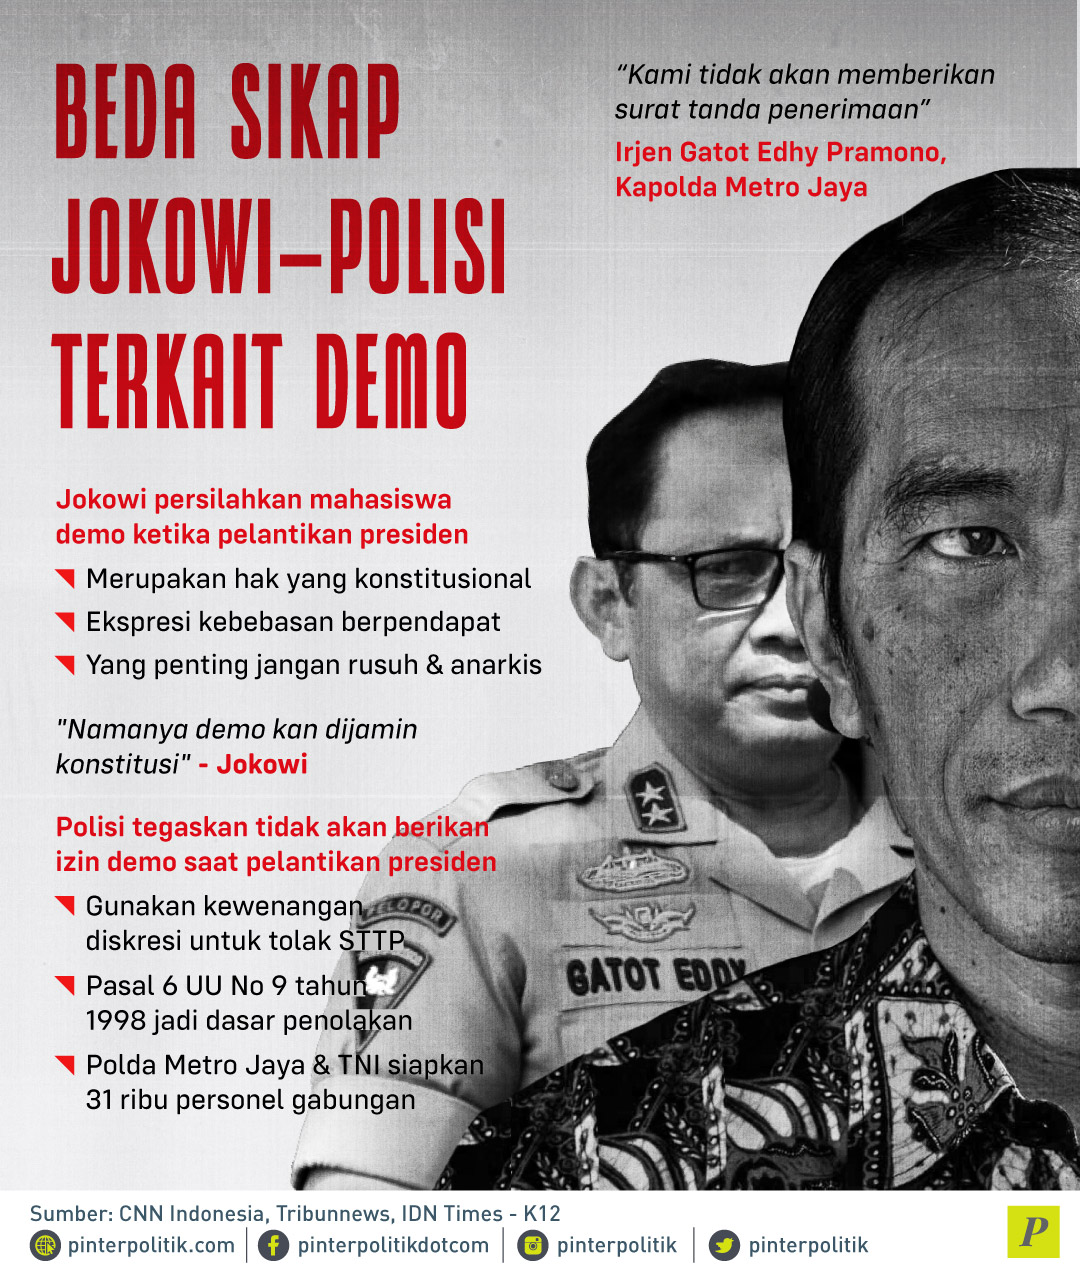 Jokowi persilahkan mahasiswa demo ketika pelantikan presiden